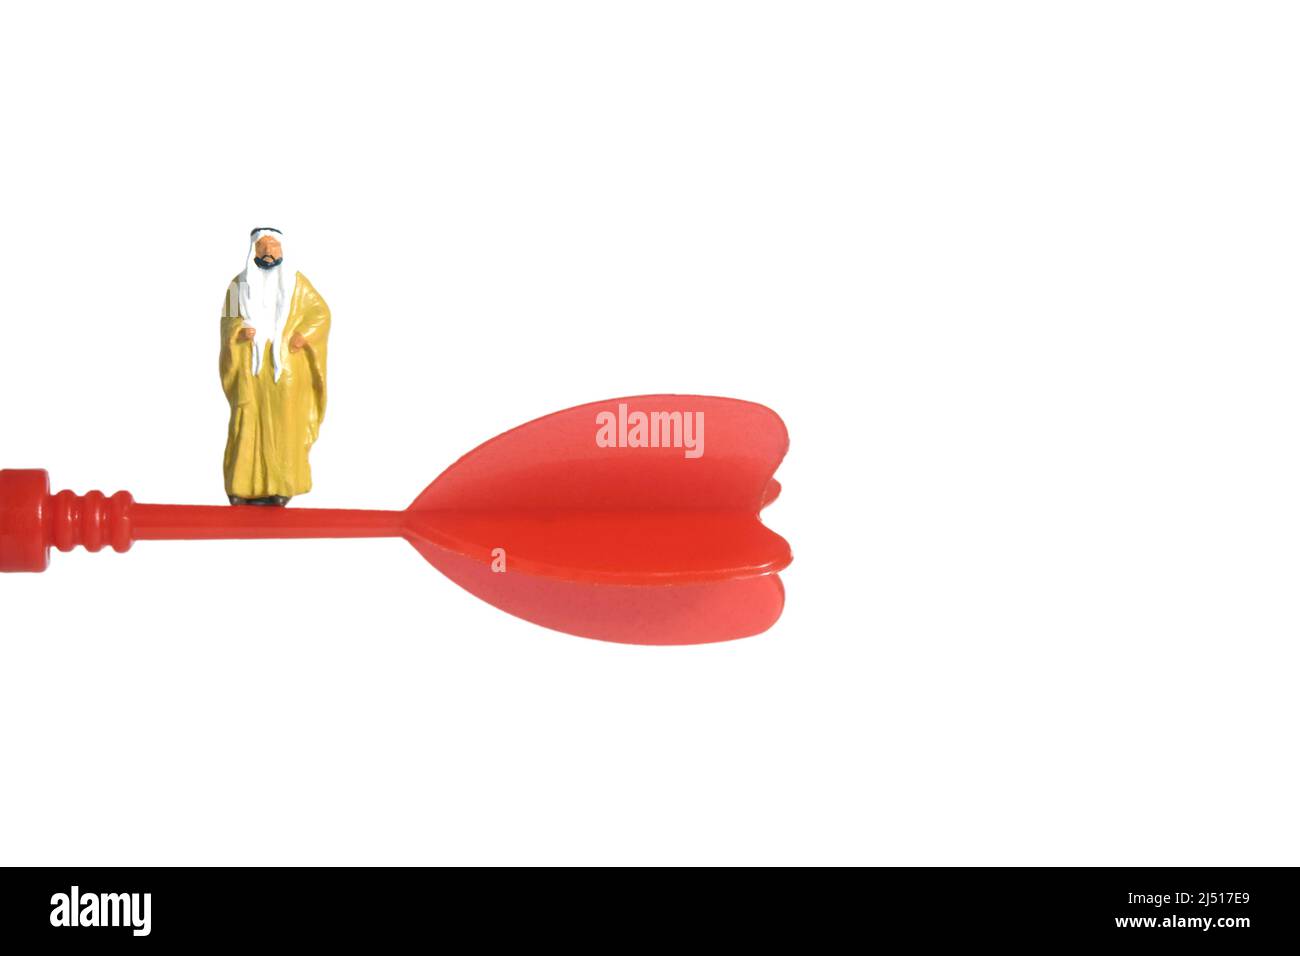 Fotografia di personaggi giocattolo in miniatura. Un sultano che indossa bihst giallo (mantello re) che si trova sopra la freccia rossa volante. Isolato su sfondo bianco. IMA Foto Stock